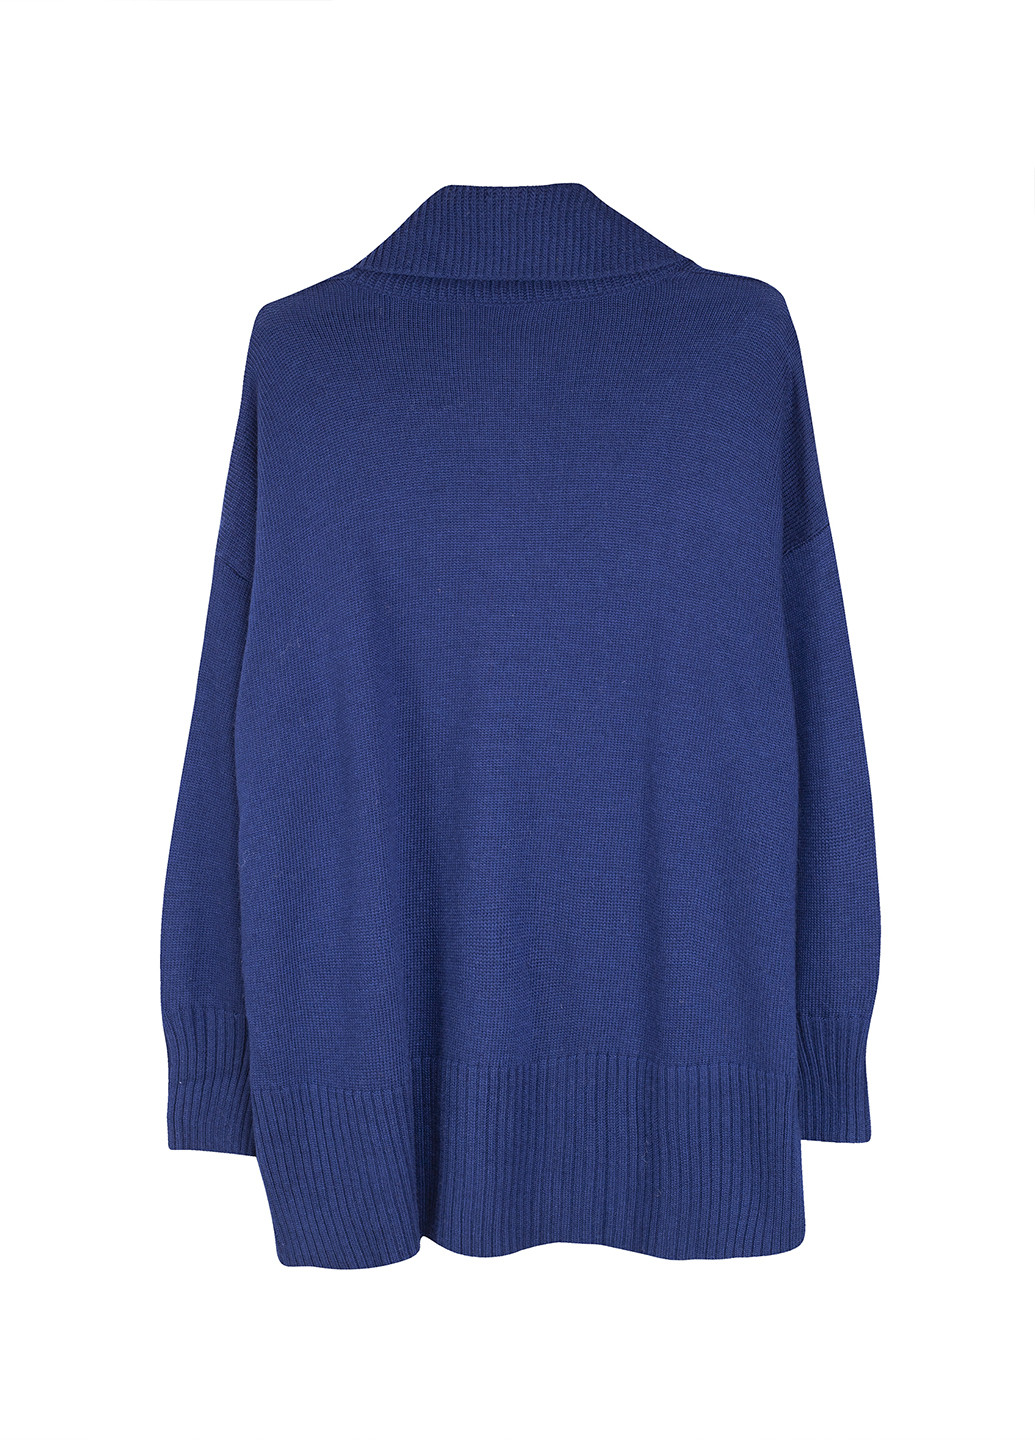 Синий демисезонный пуловер пуловер C&A